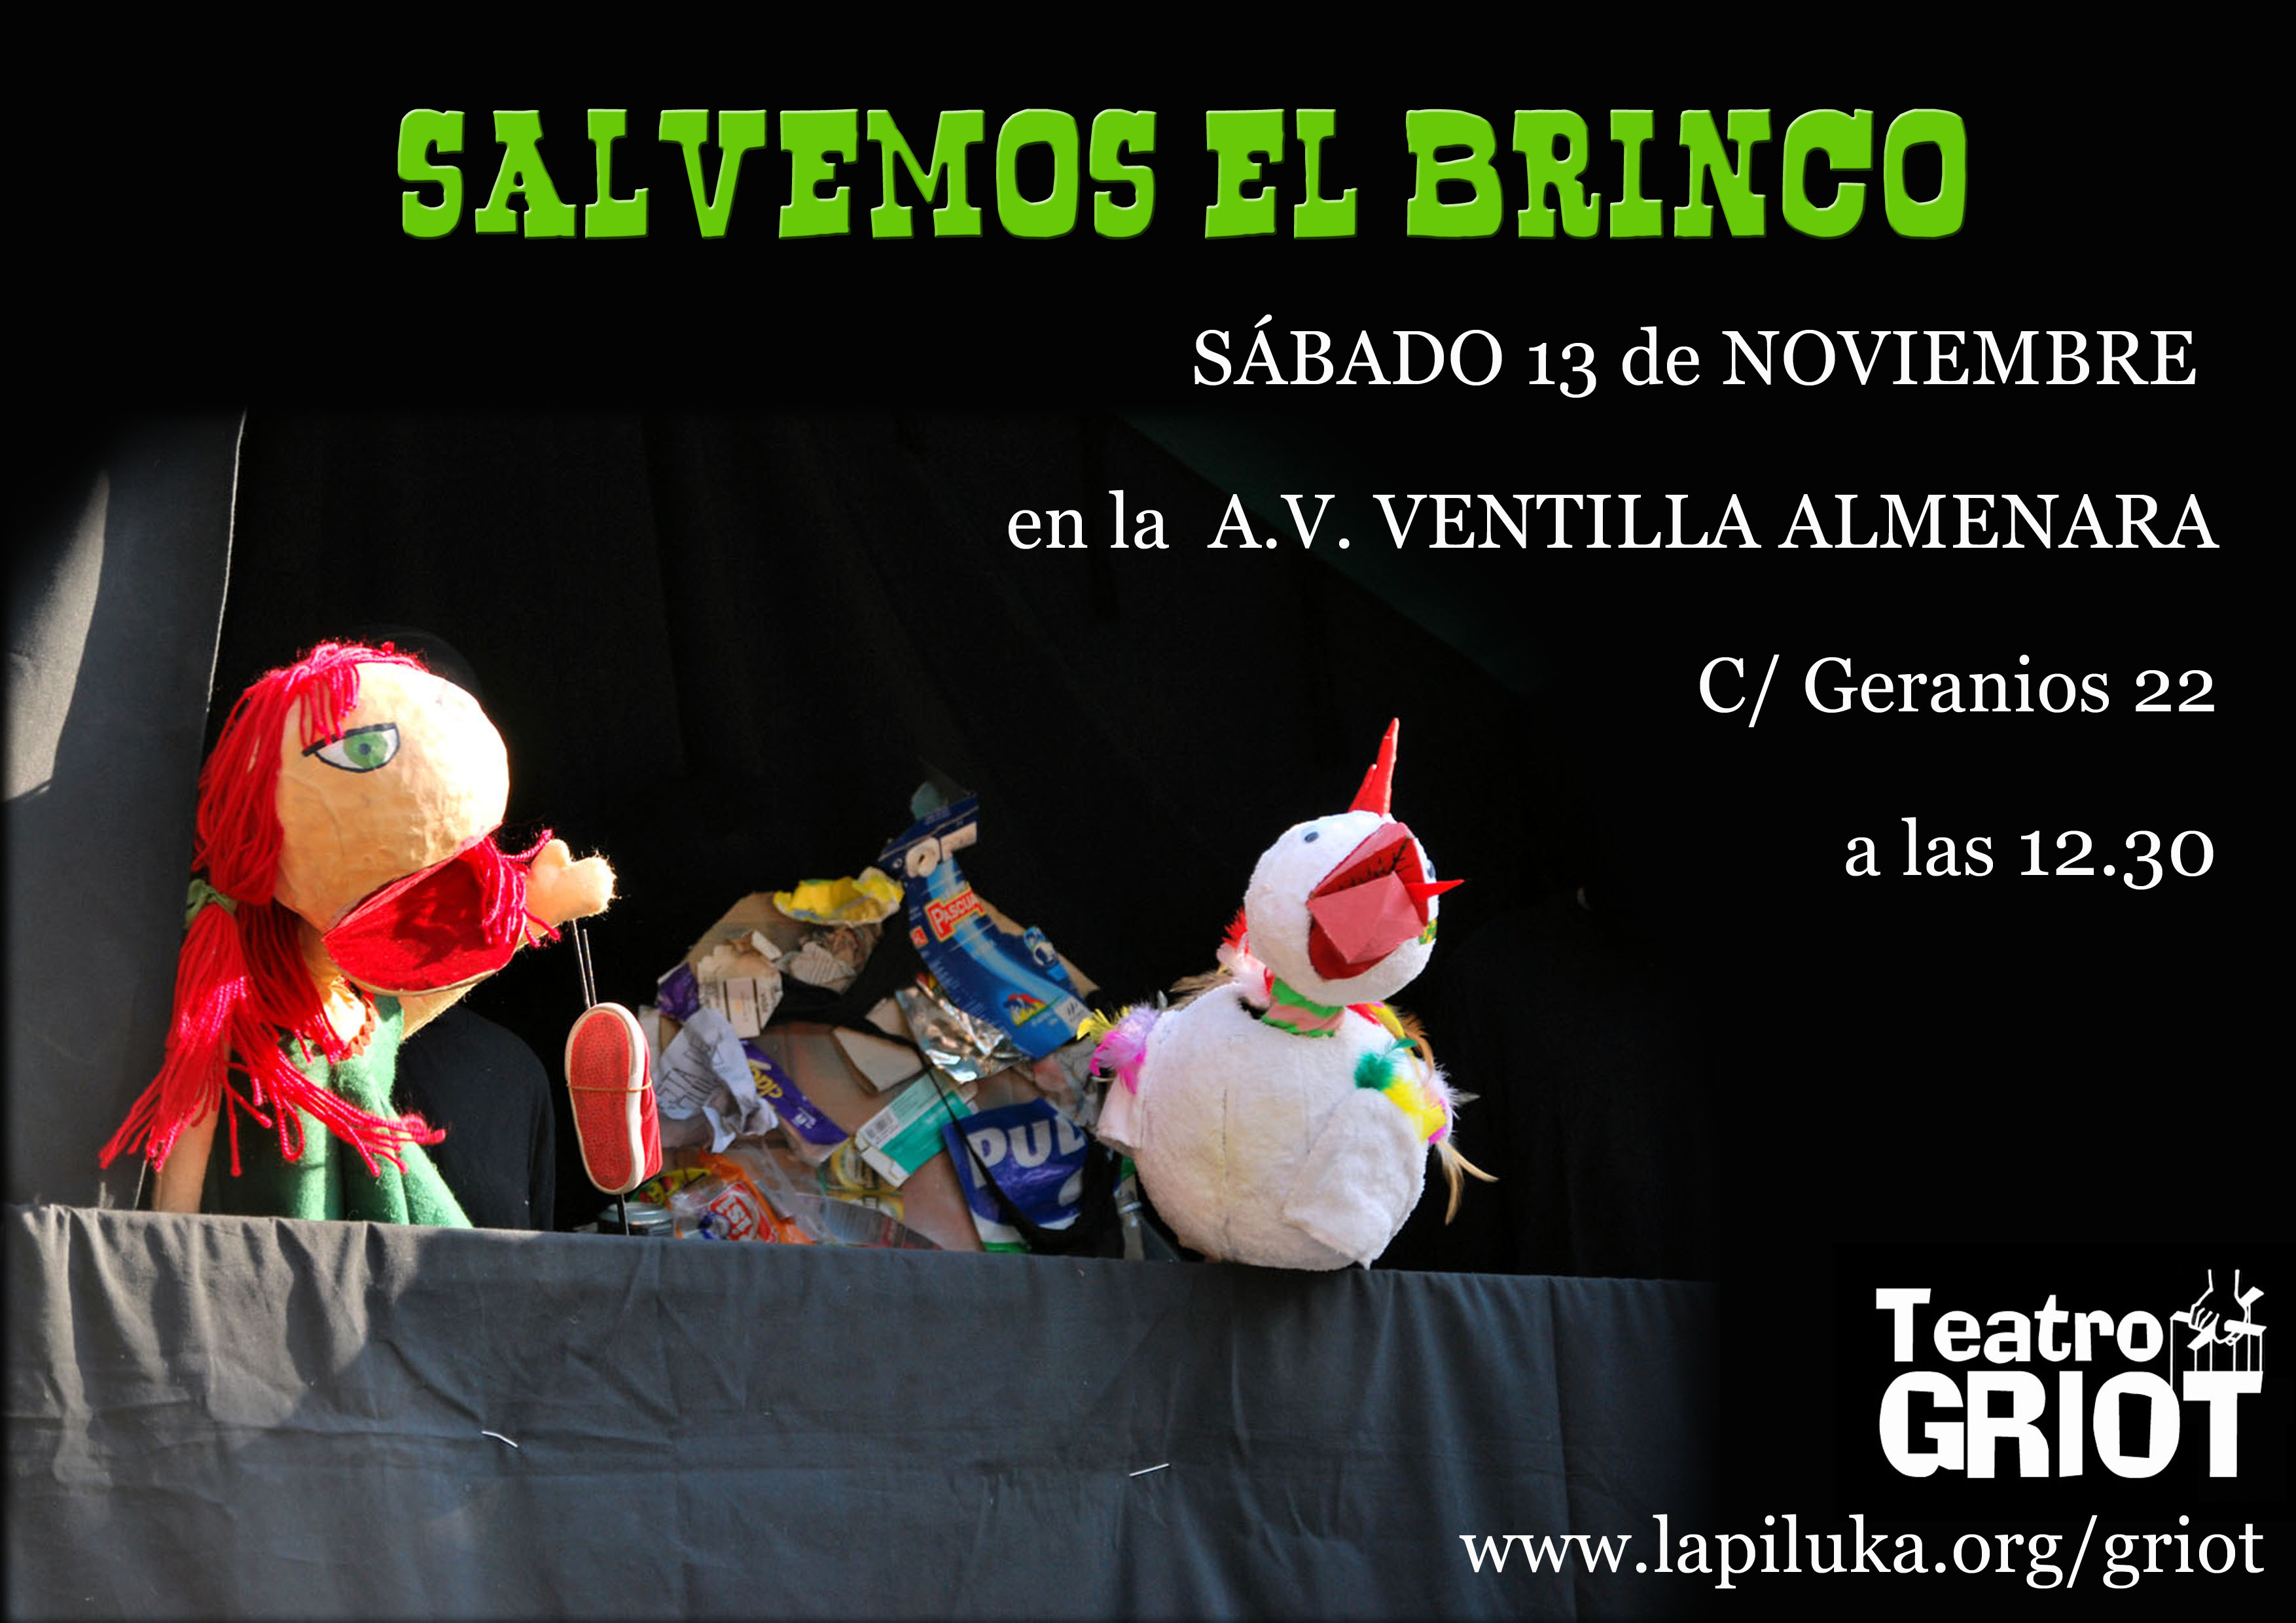 «Salvemos el Brinco», sábado 13 de noviembre a las 12:30 en la A.V. Ventilla Almenara, c/ Geranios 22 por Teatro GRIOT